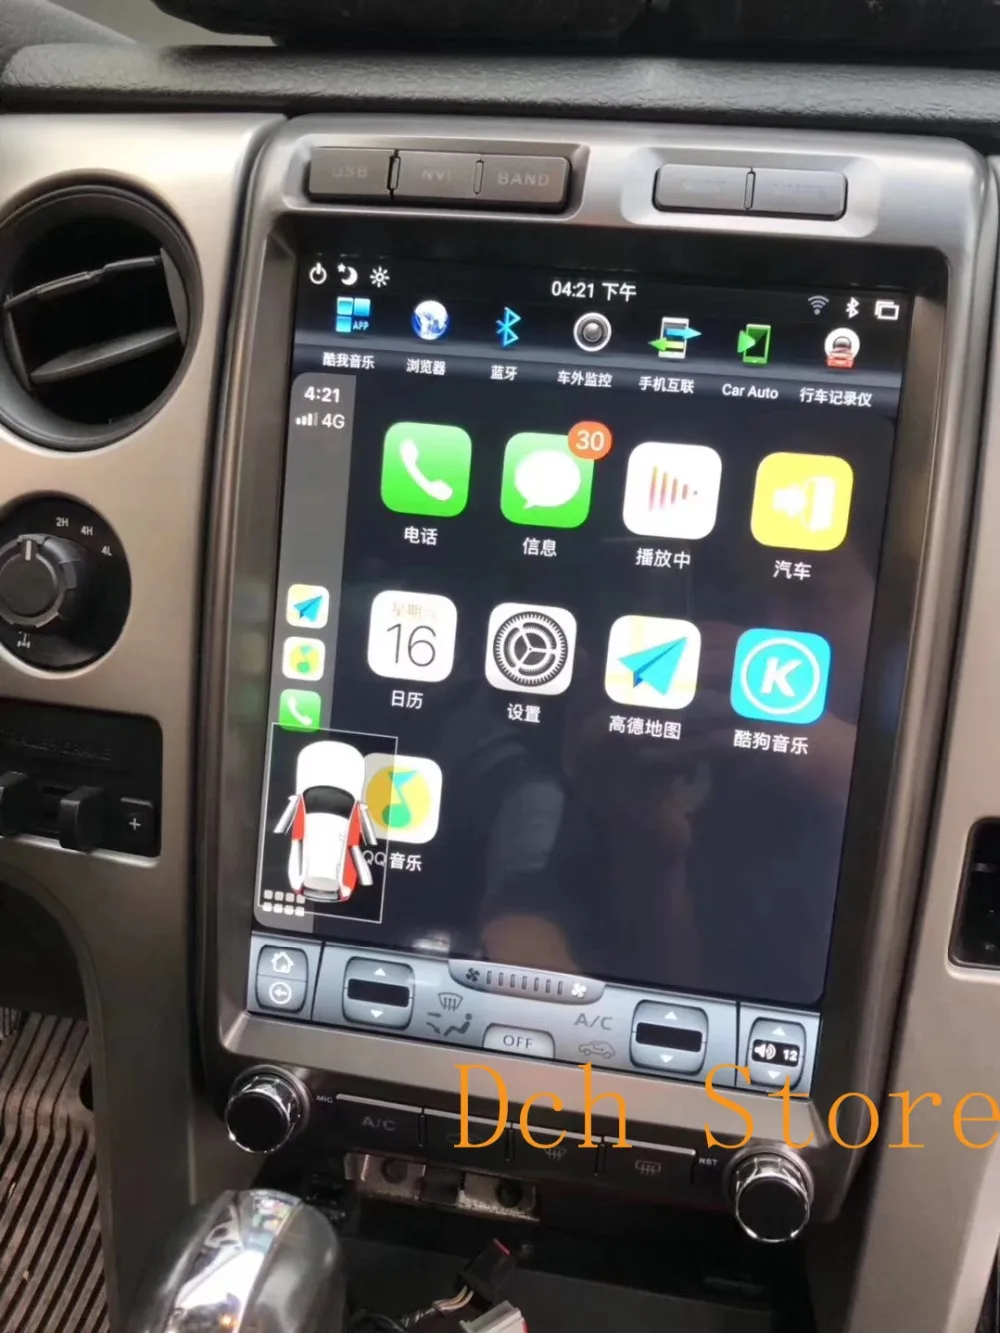 13 дюймов вертикальный tesla стиль Android 8,1 автомобильный dvd-плеер gps навигация радио для Ford F150 2009 2010 2011 2012 2013 стерео PX6 авто